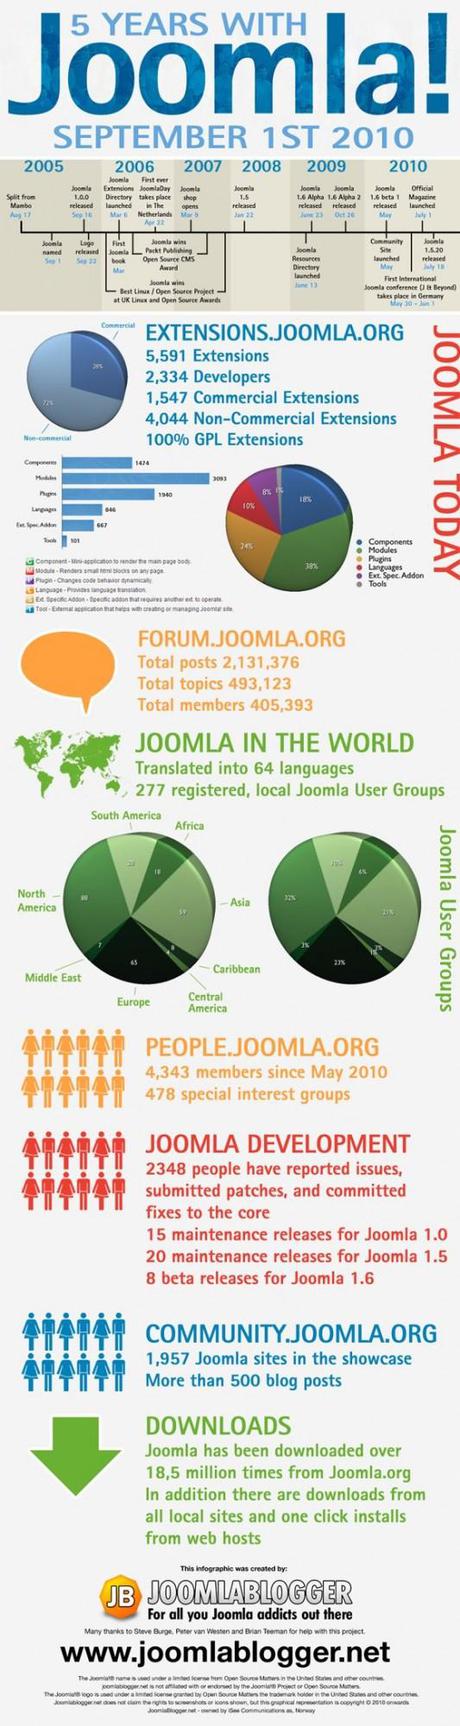 joomla infographie 5ans 533x2000 5 ans dexpérience avec le CMS Joomla   Infographie